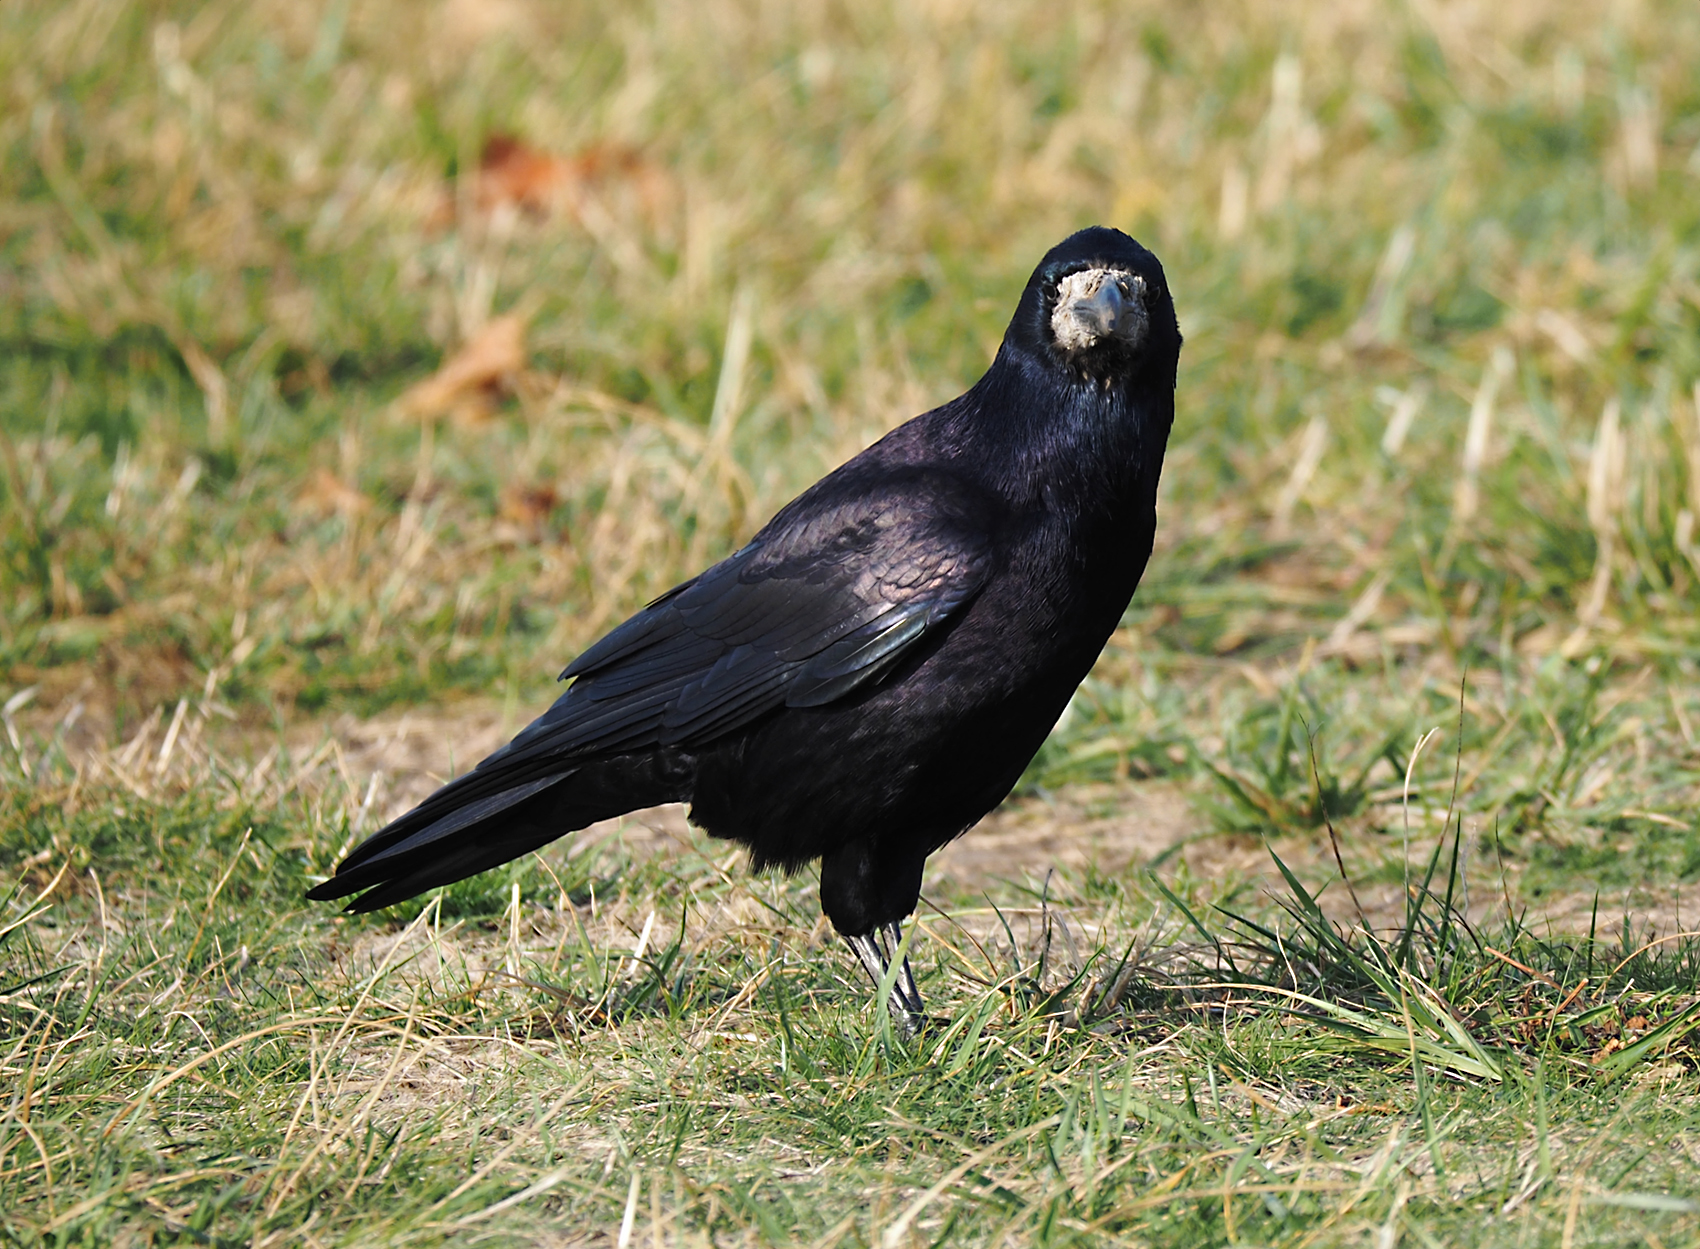 Saatkraehe02 (Corvus frugilegus)